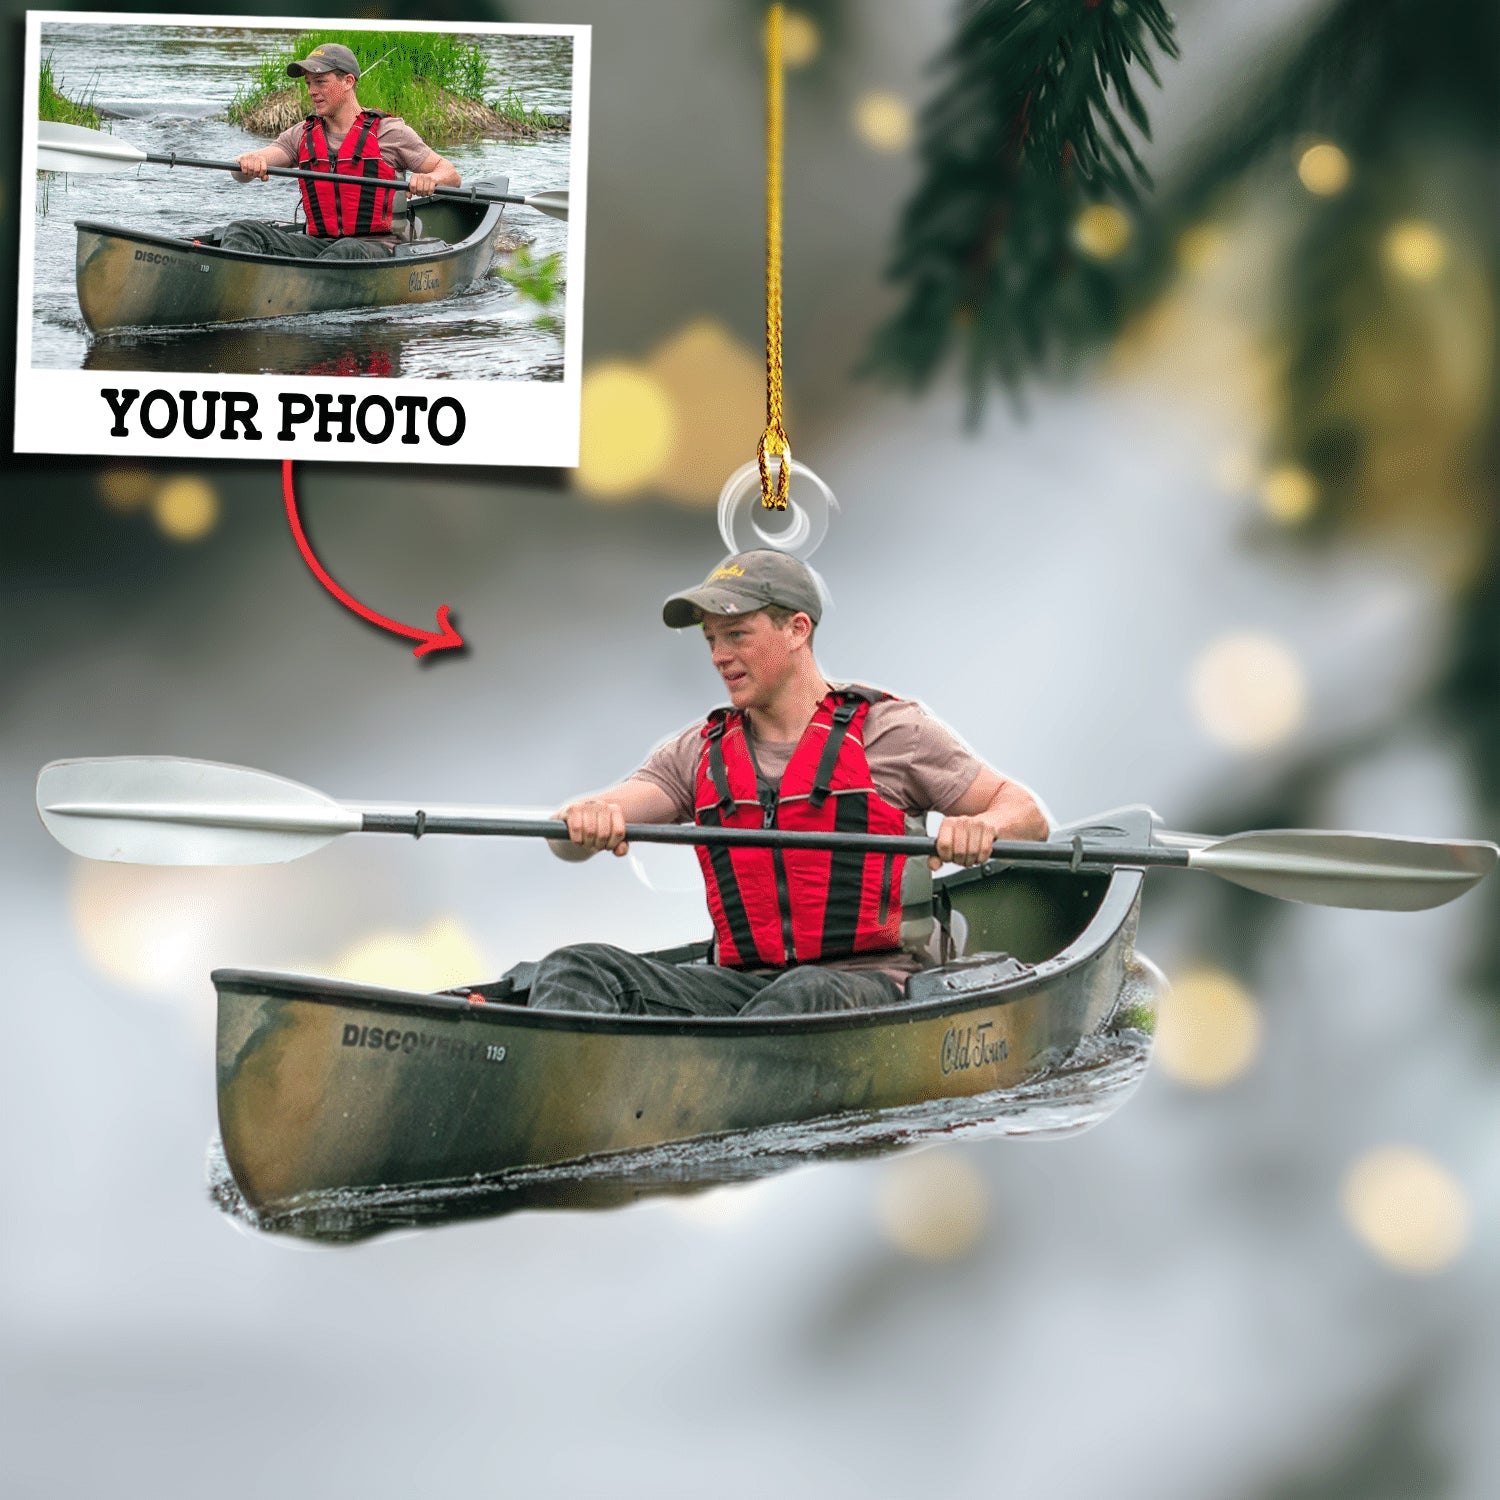 Custom Photo Ornament Gift For Kayaker - Personalized Upload Photo Ornament Gift For Kayak Lovers